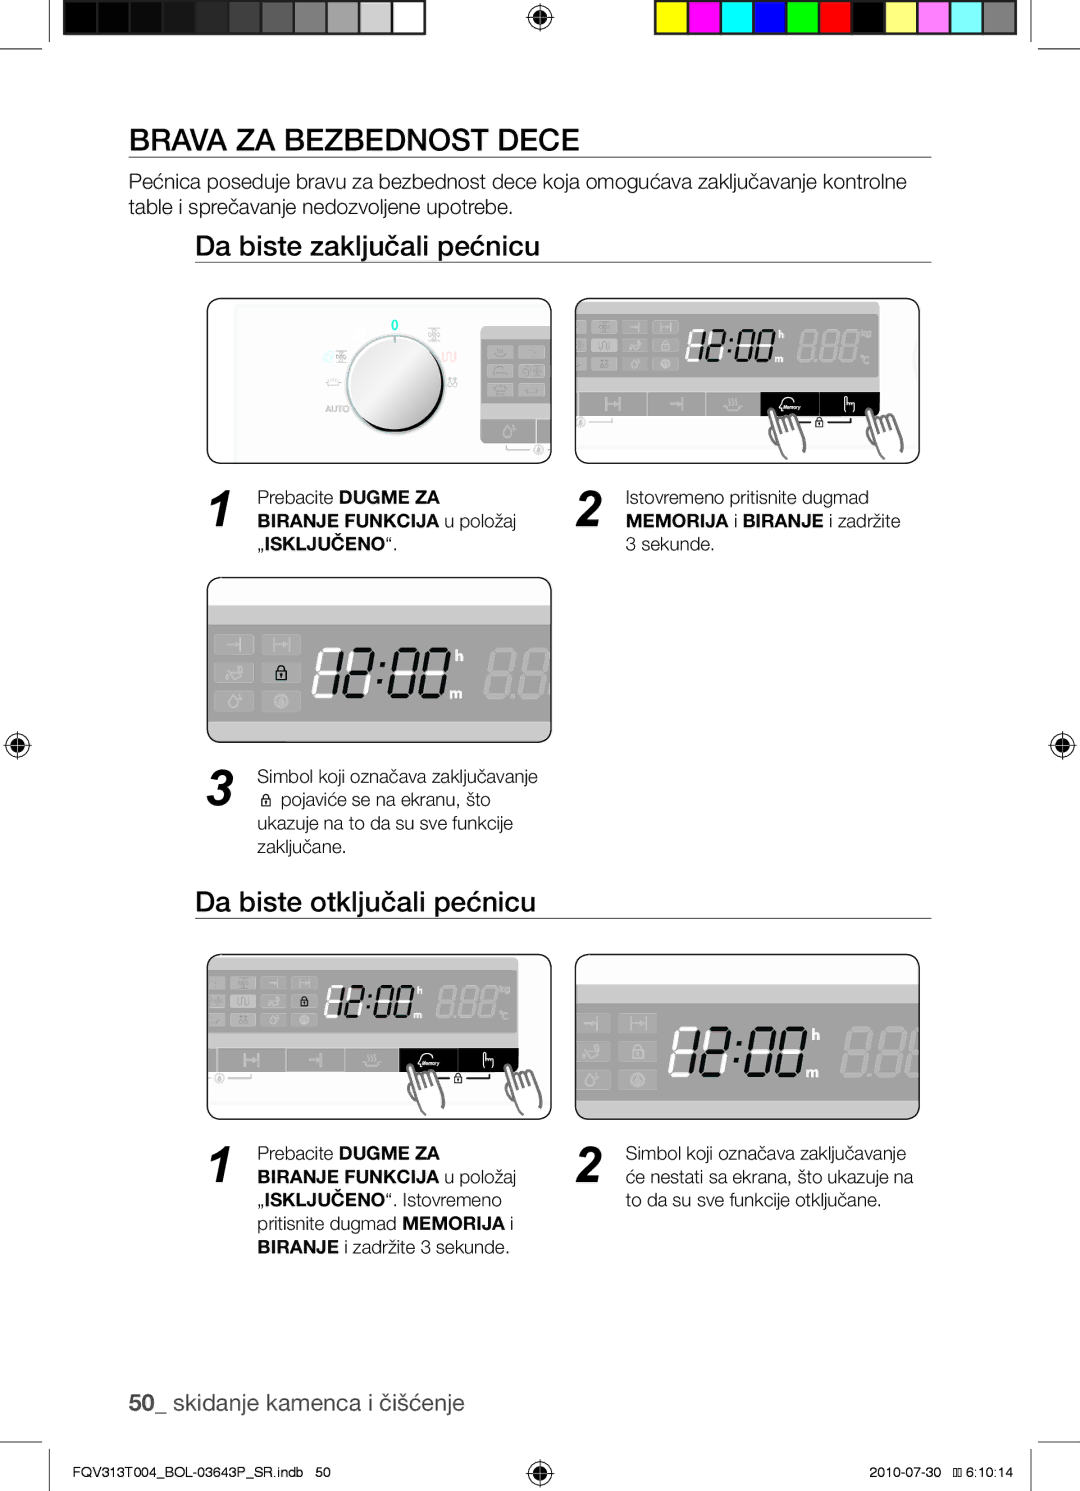 Samsung FQV313T004/BOL manual Brava za bezbednost dece, Da biste zaključali pećnicu, Da biste otključali pećnicu 